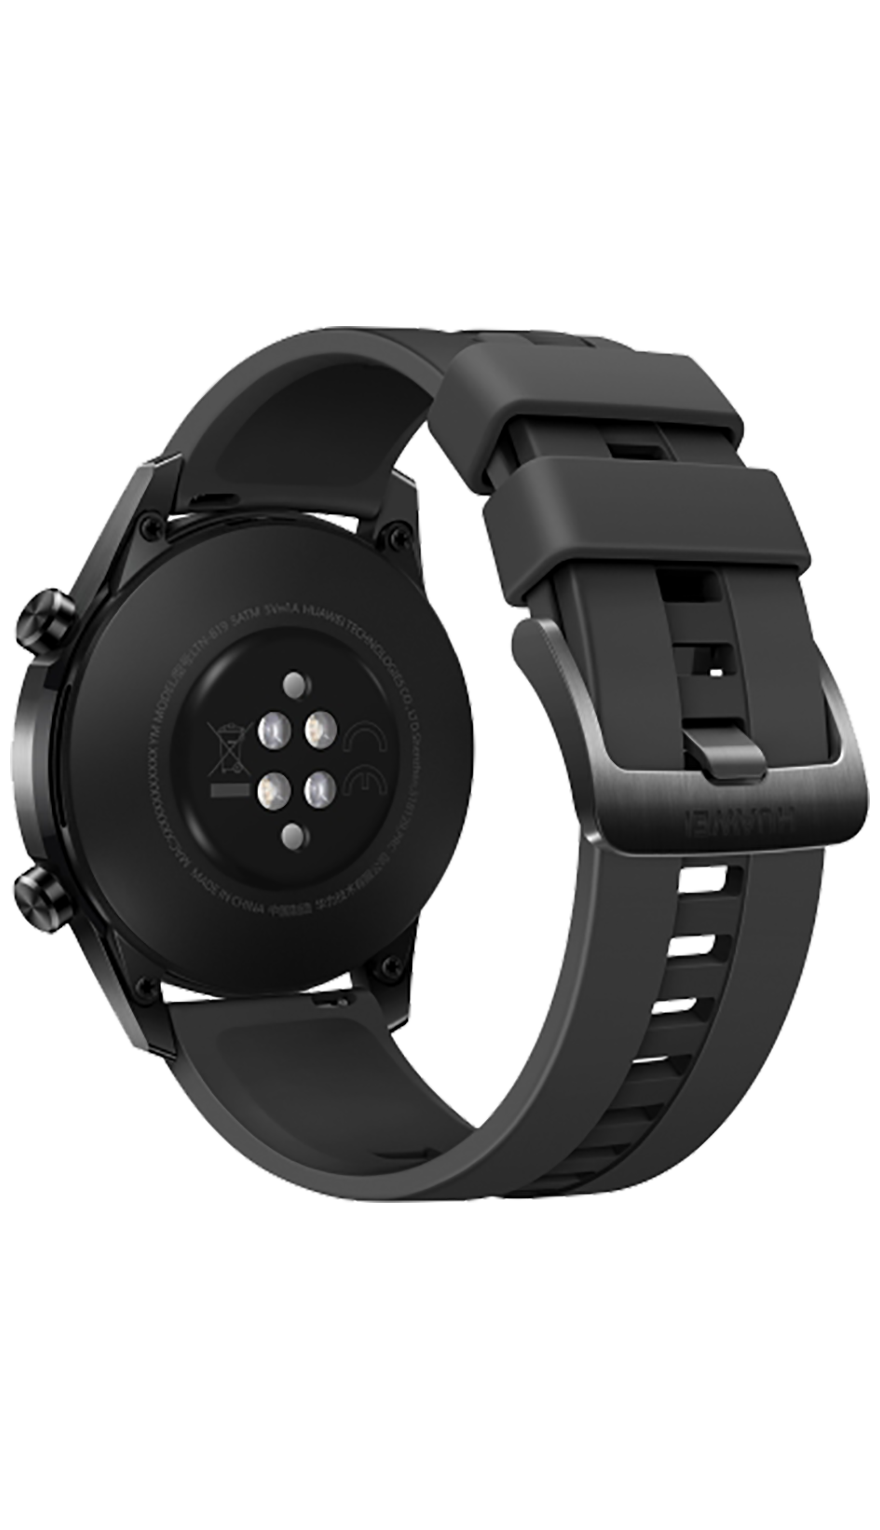 Huawei Watch GT2 46mm | Tele2